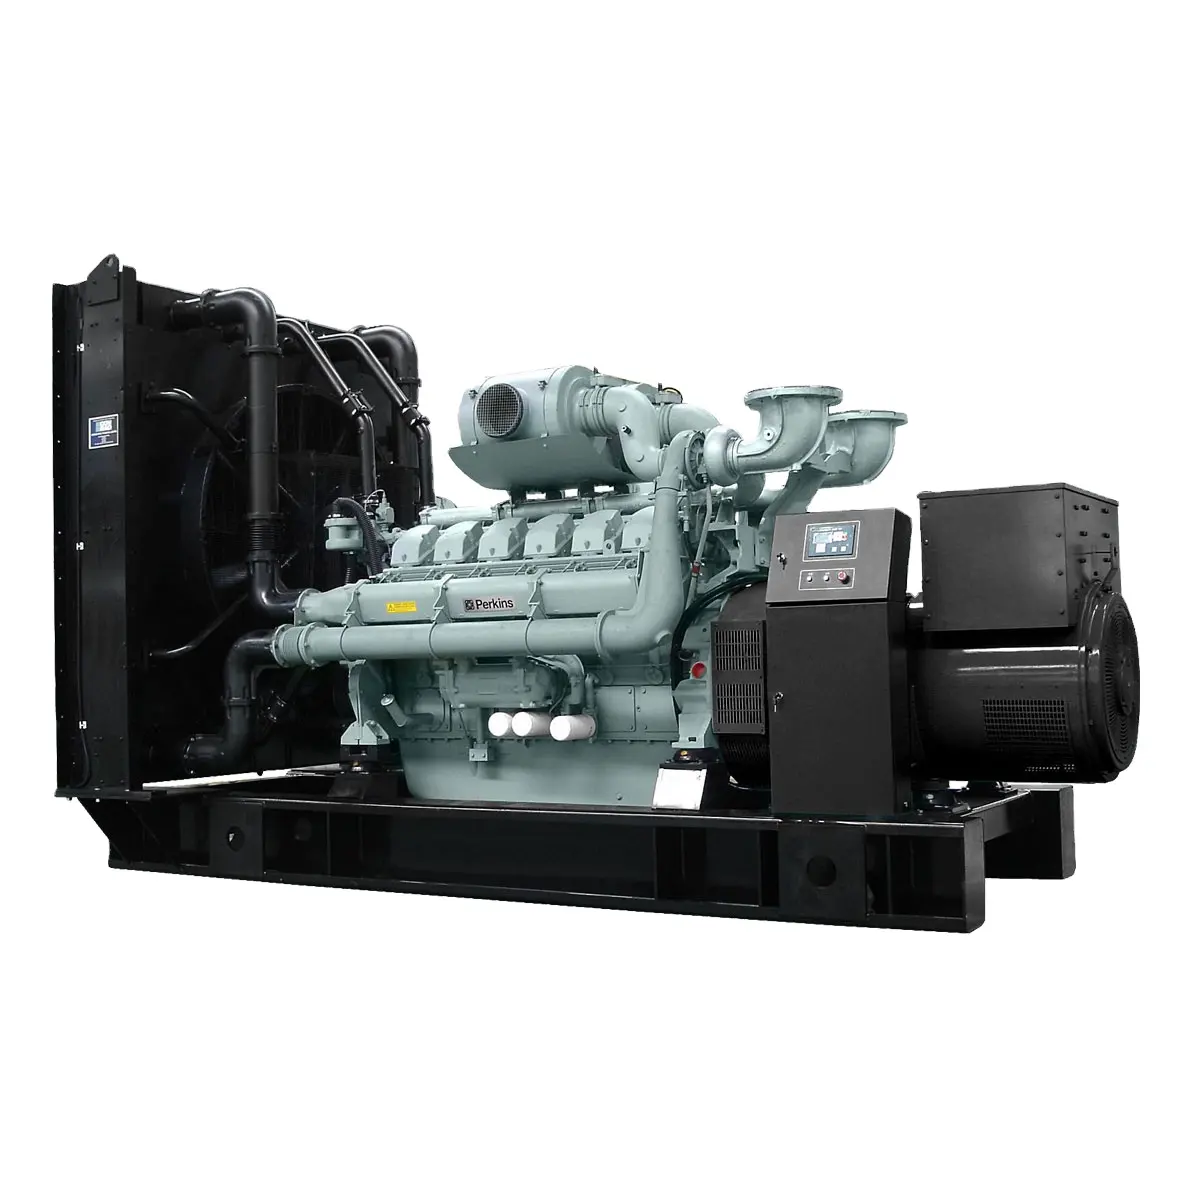 Резервный промышленный 1500 Kva genset 1200 кВт дизель-генератор цена дизель-генератор 1,5 Mva 1,2 Mw